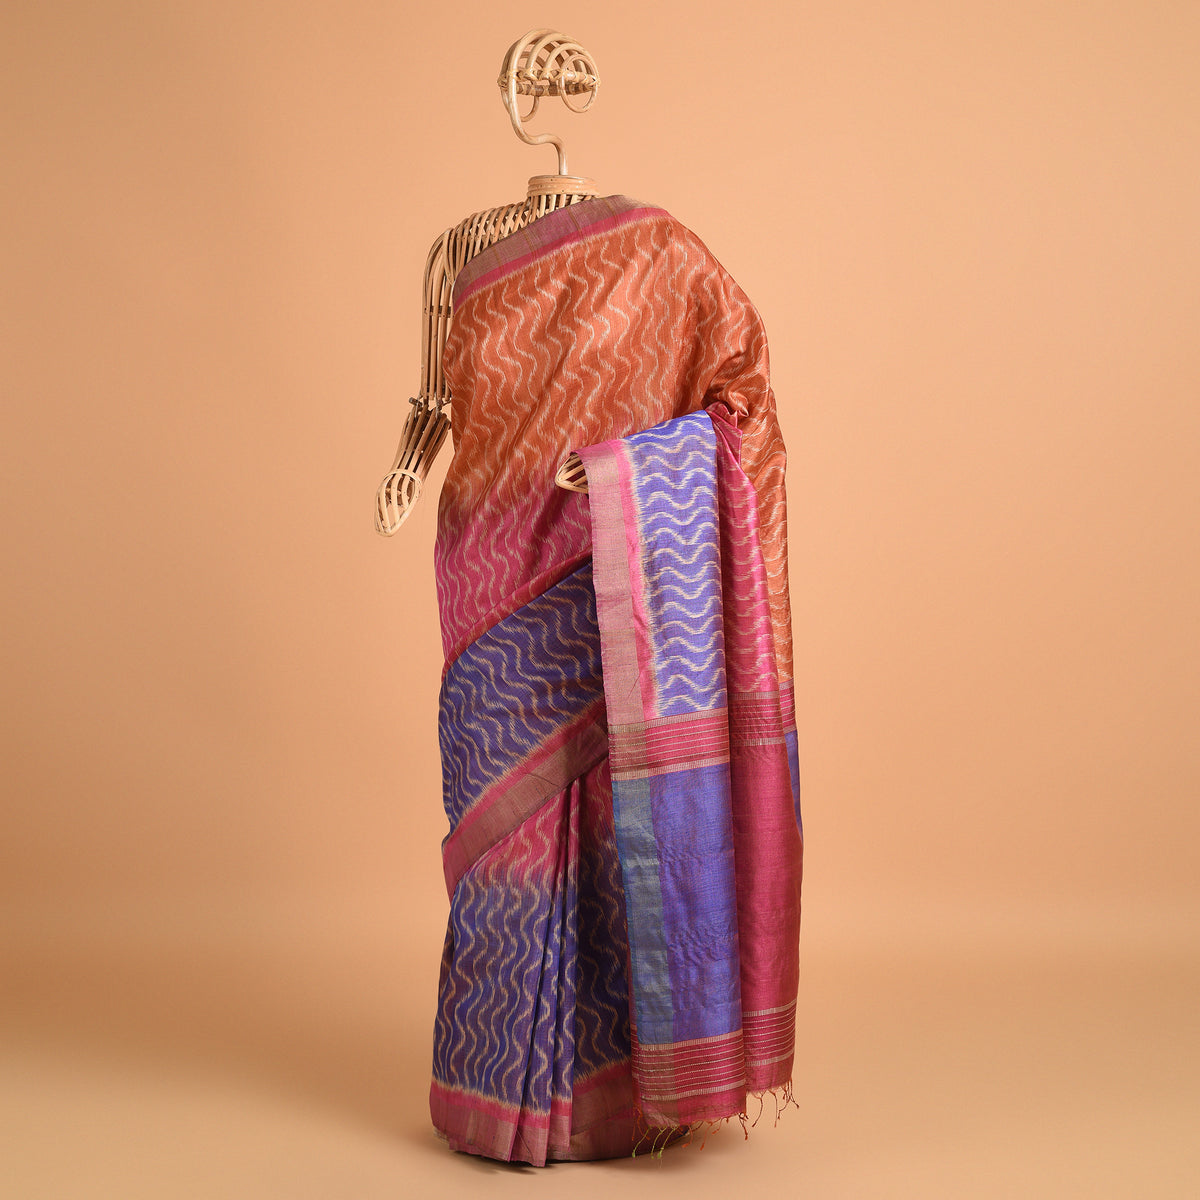 IKAT Tussar Tarang Handwoven Silk Saree - Rust Pink Mauve